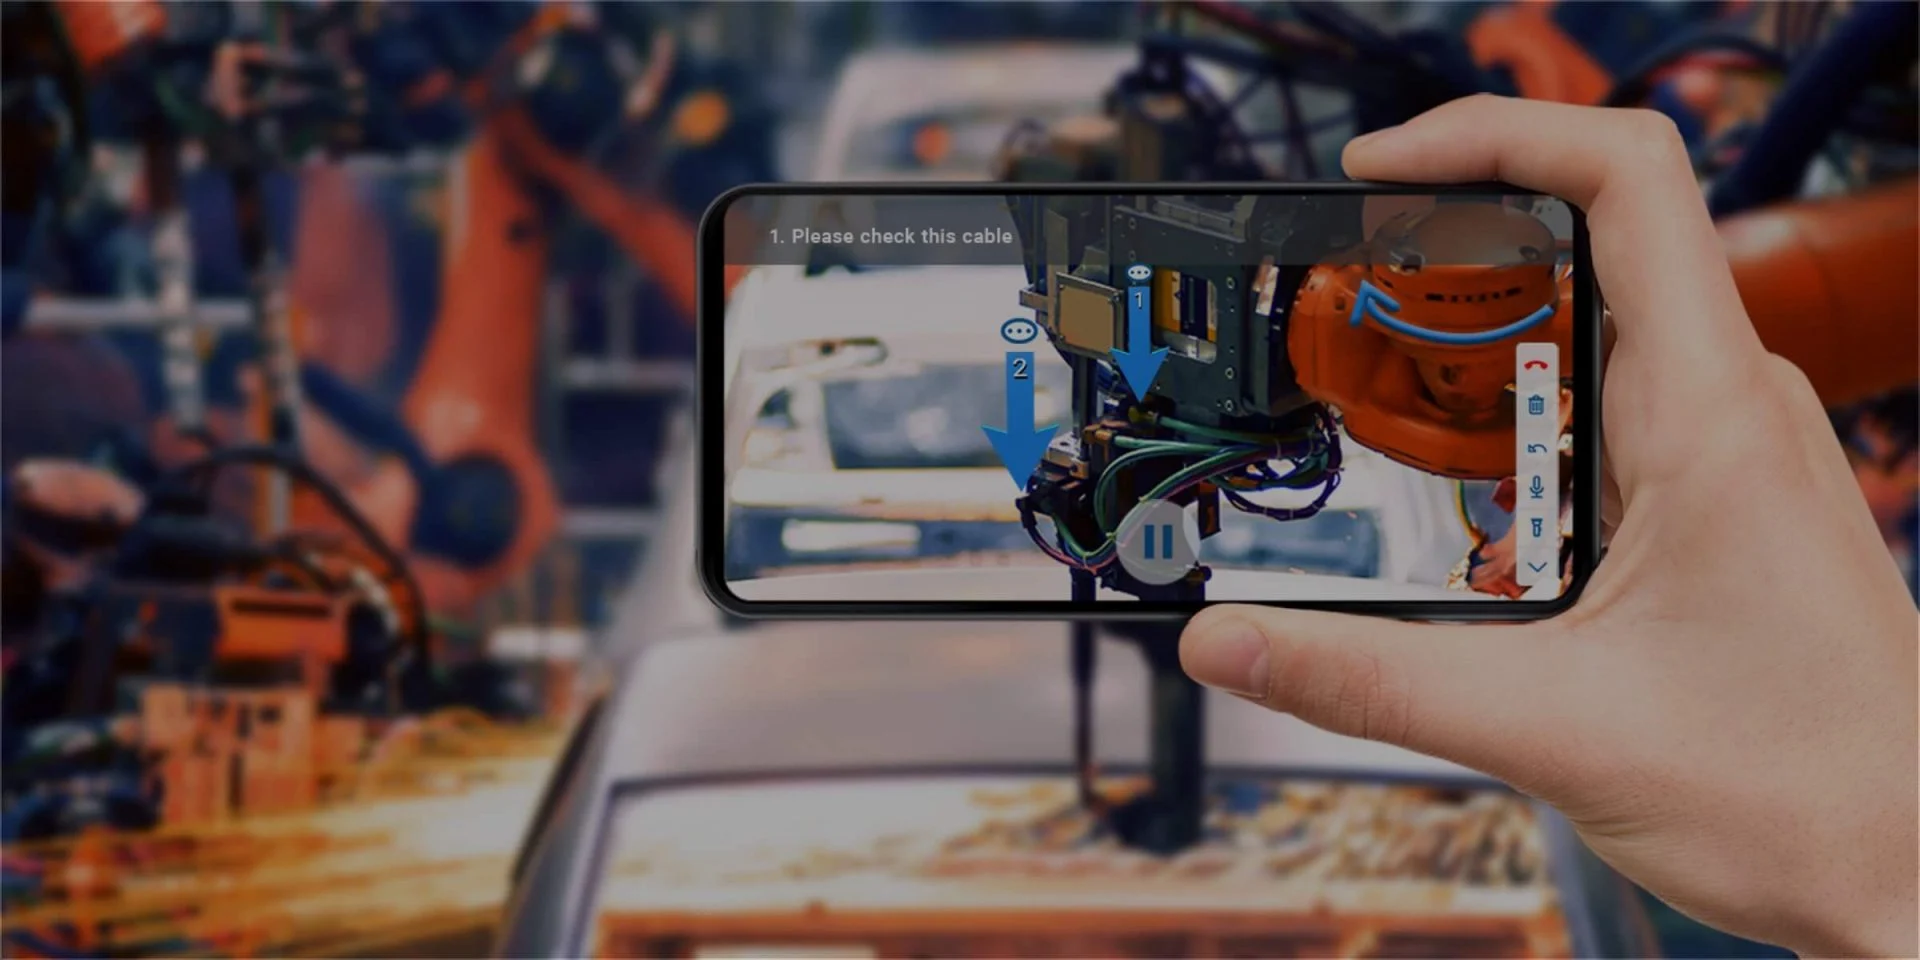 手持手机，屏幕显示增强现实（AR）视图，指导检查机器人臂部的电缆连接，背景为模糊的工业环境。